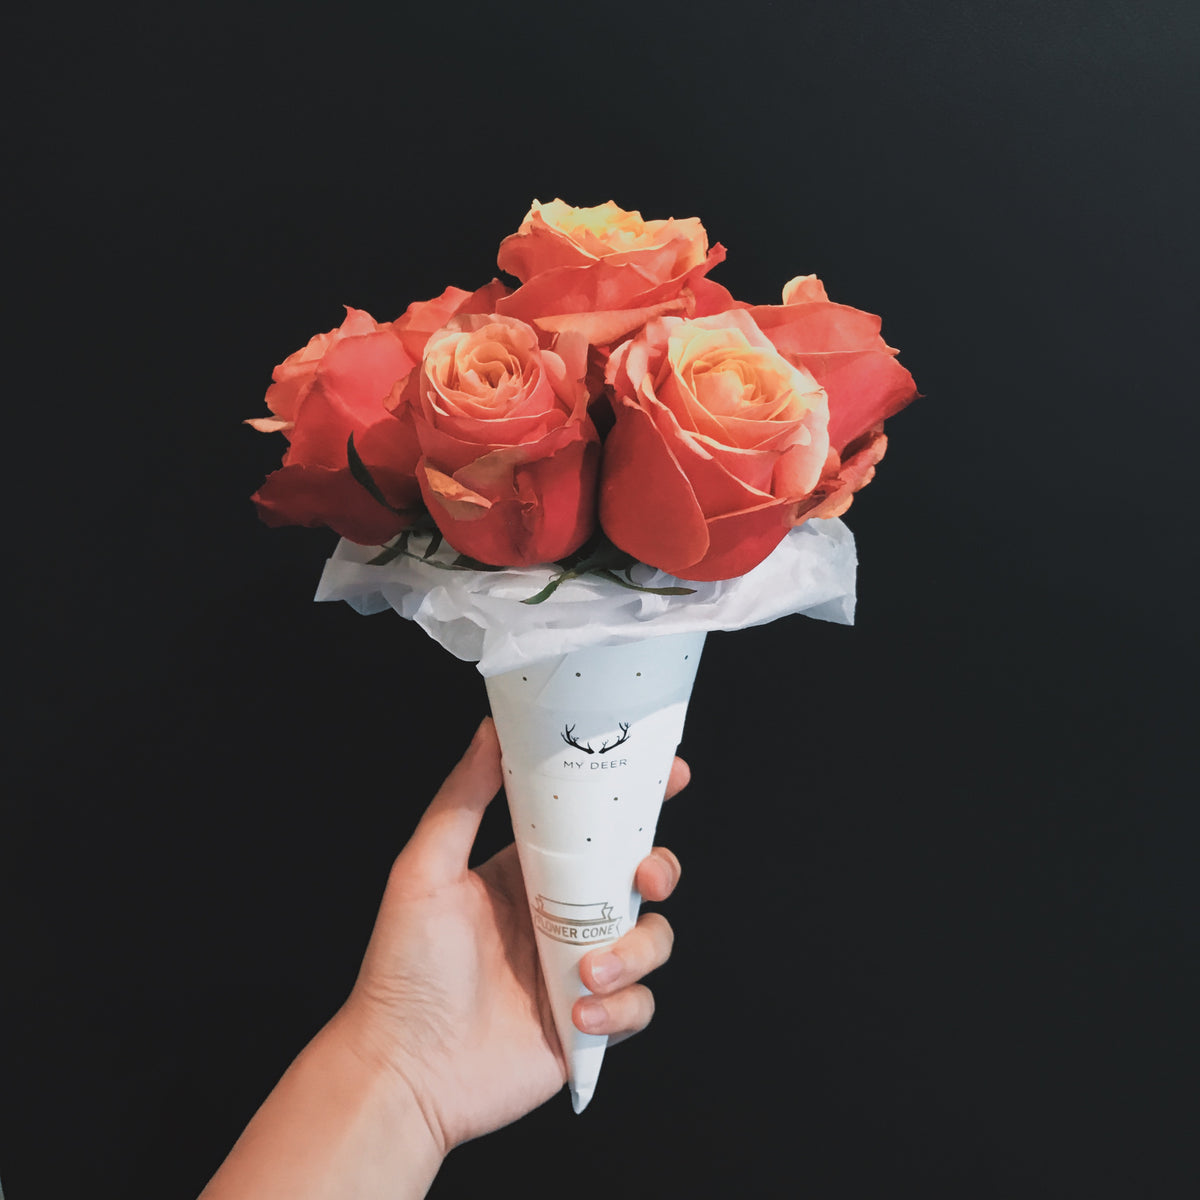 冰淇淋花束 Ice Cream Bouquet